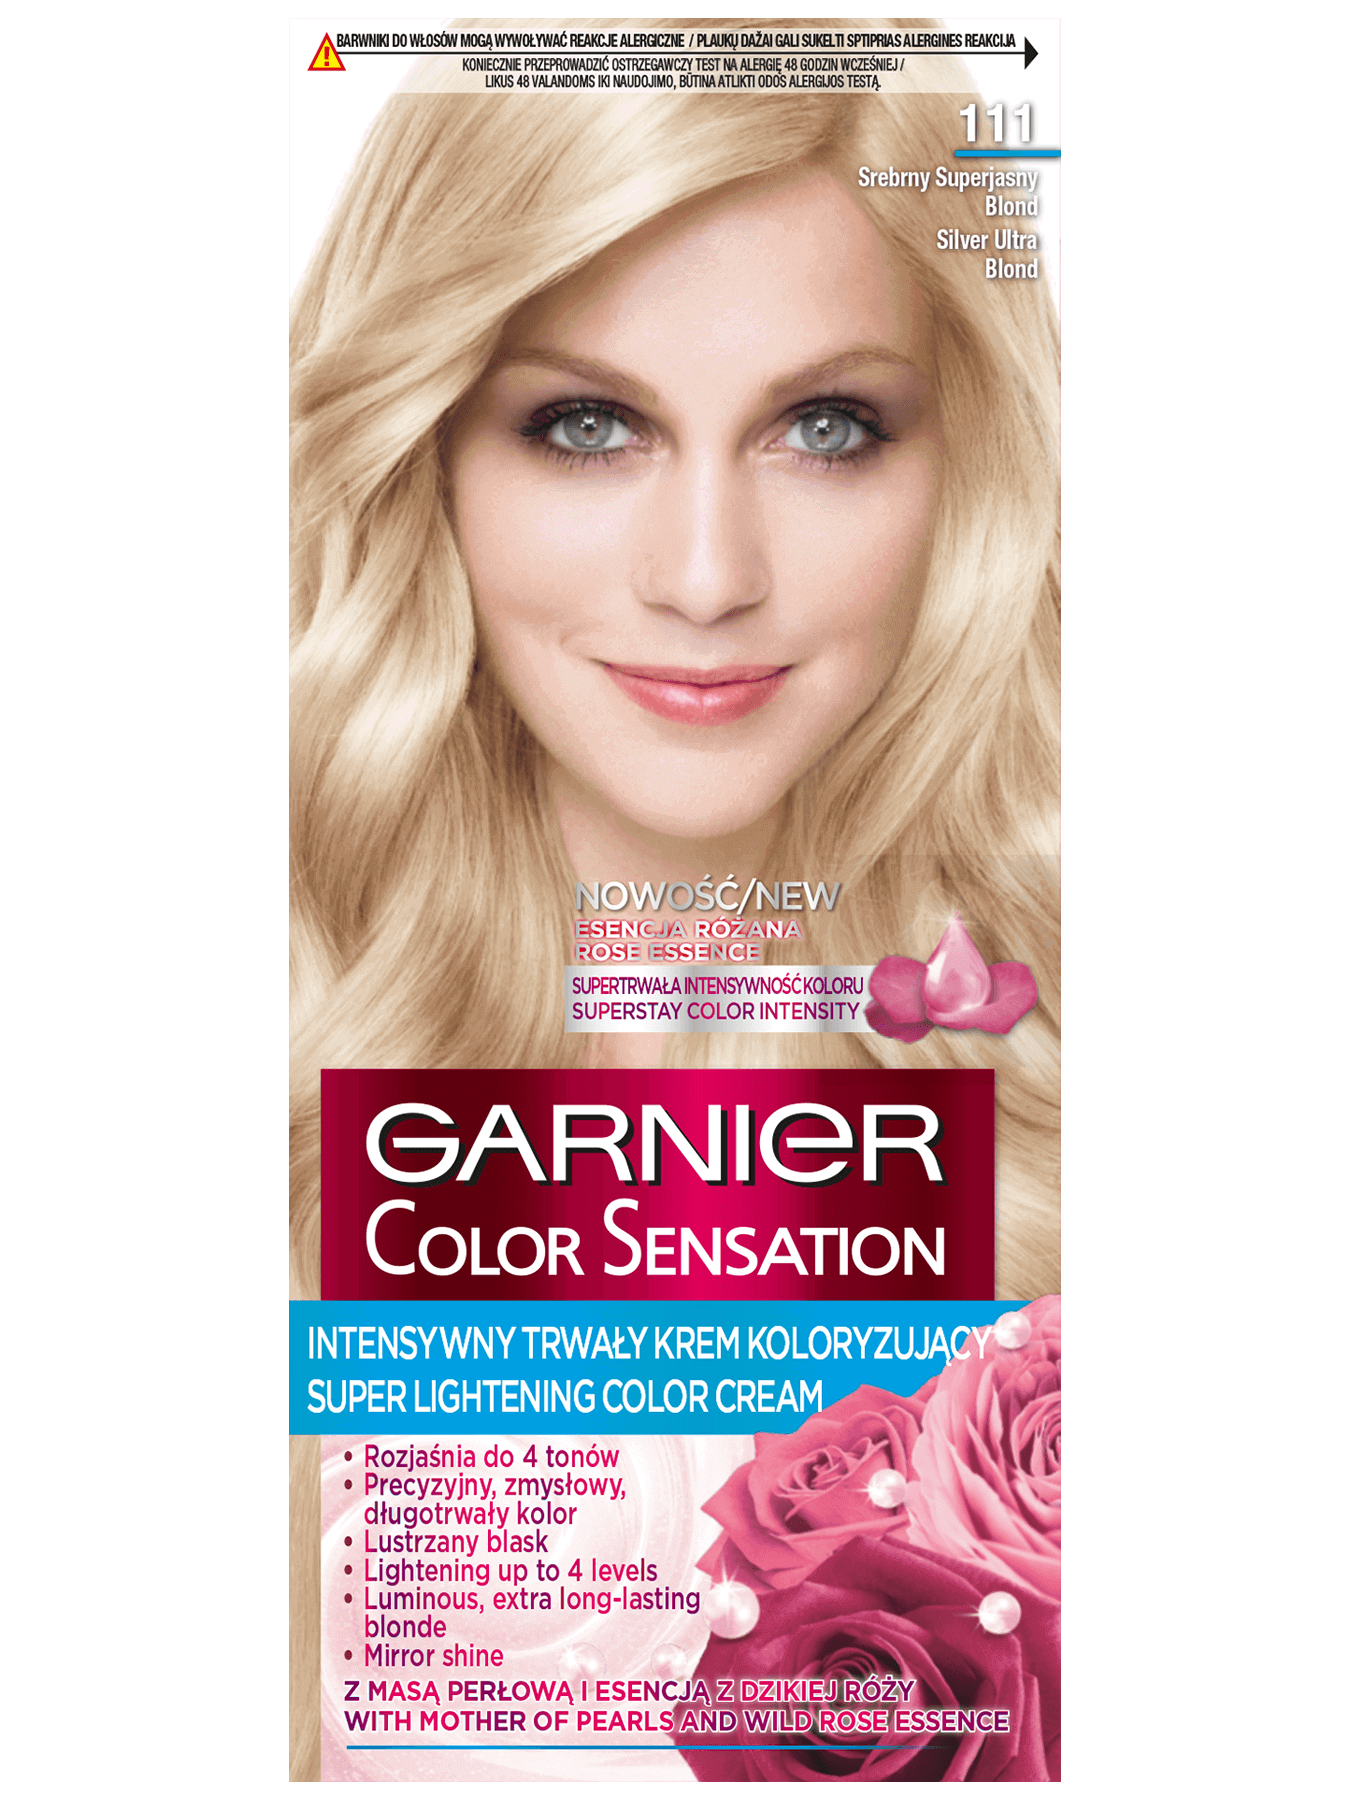 garnier color sensation 1 1 1 srebrny superjasny blond 1350x1800